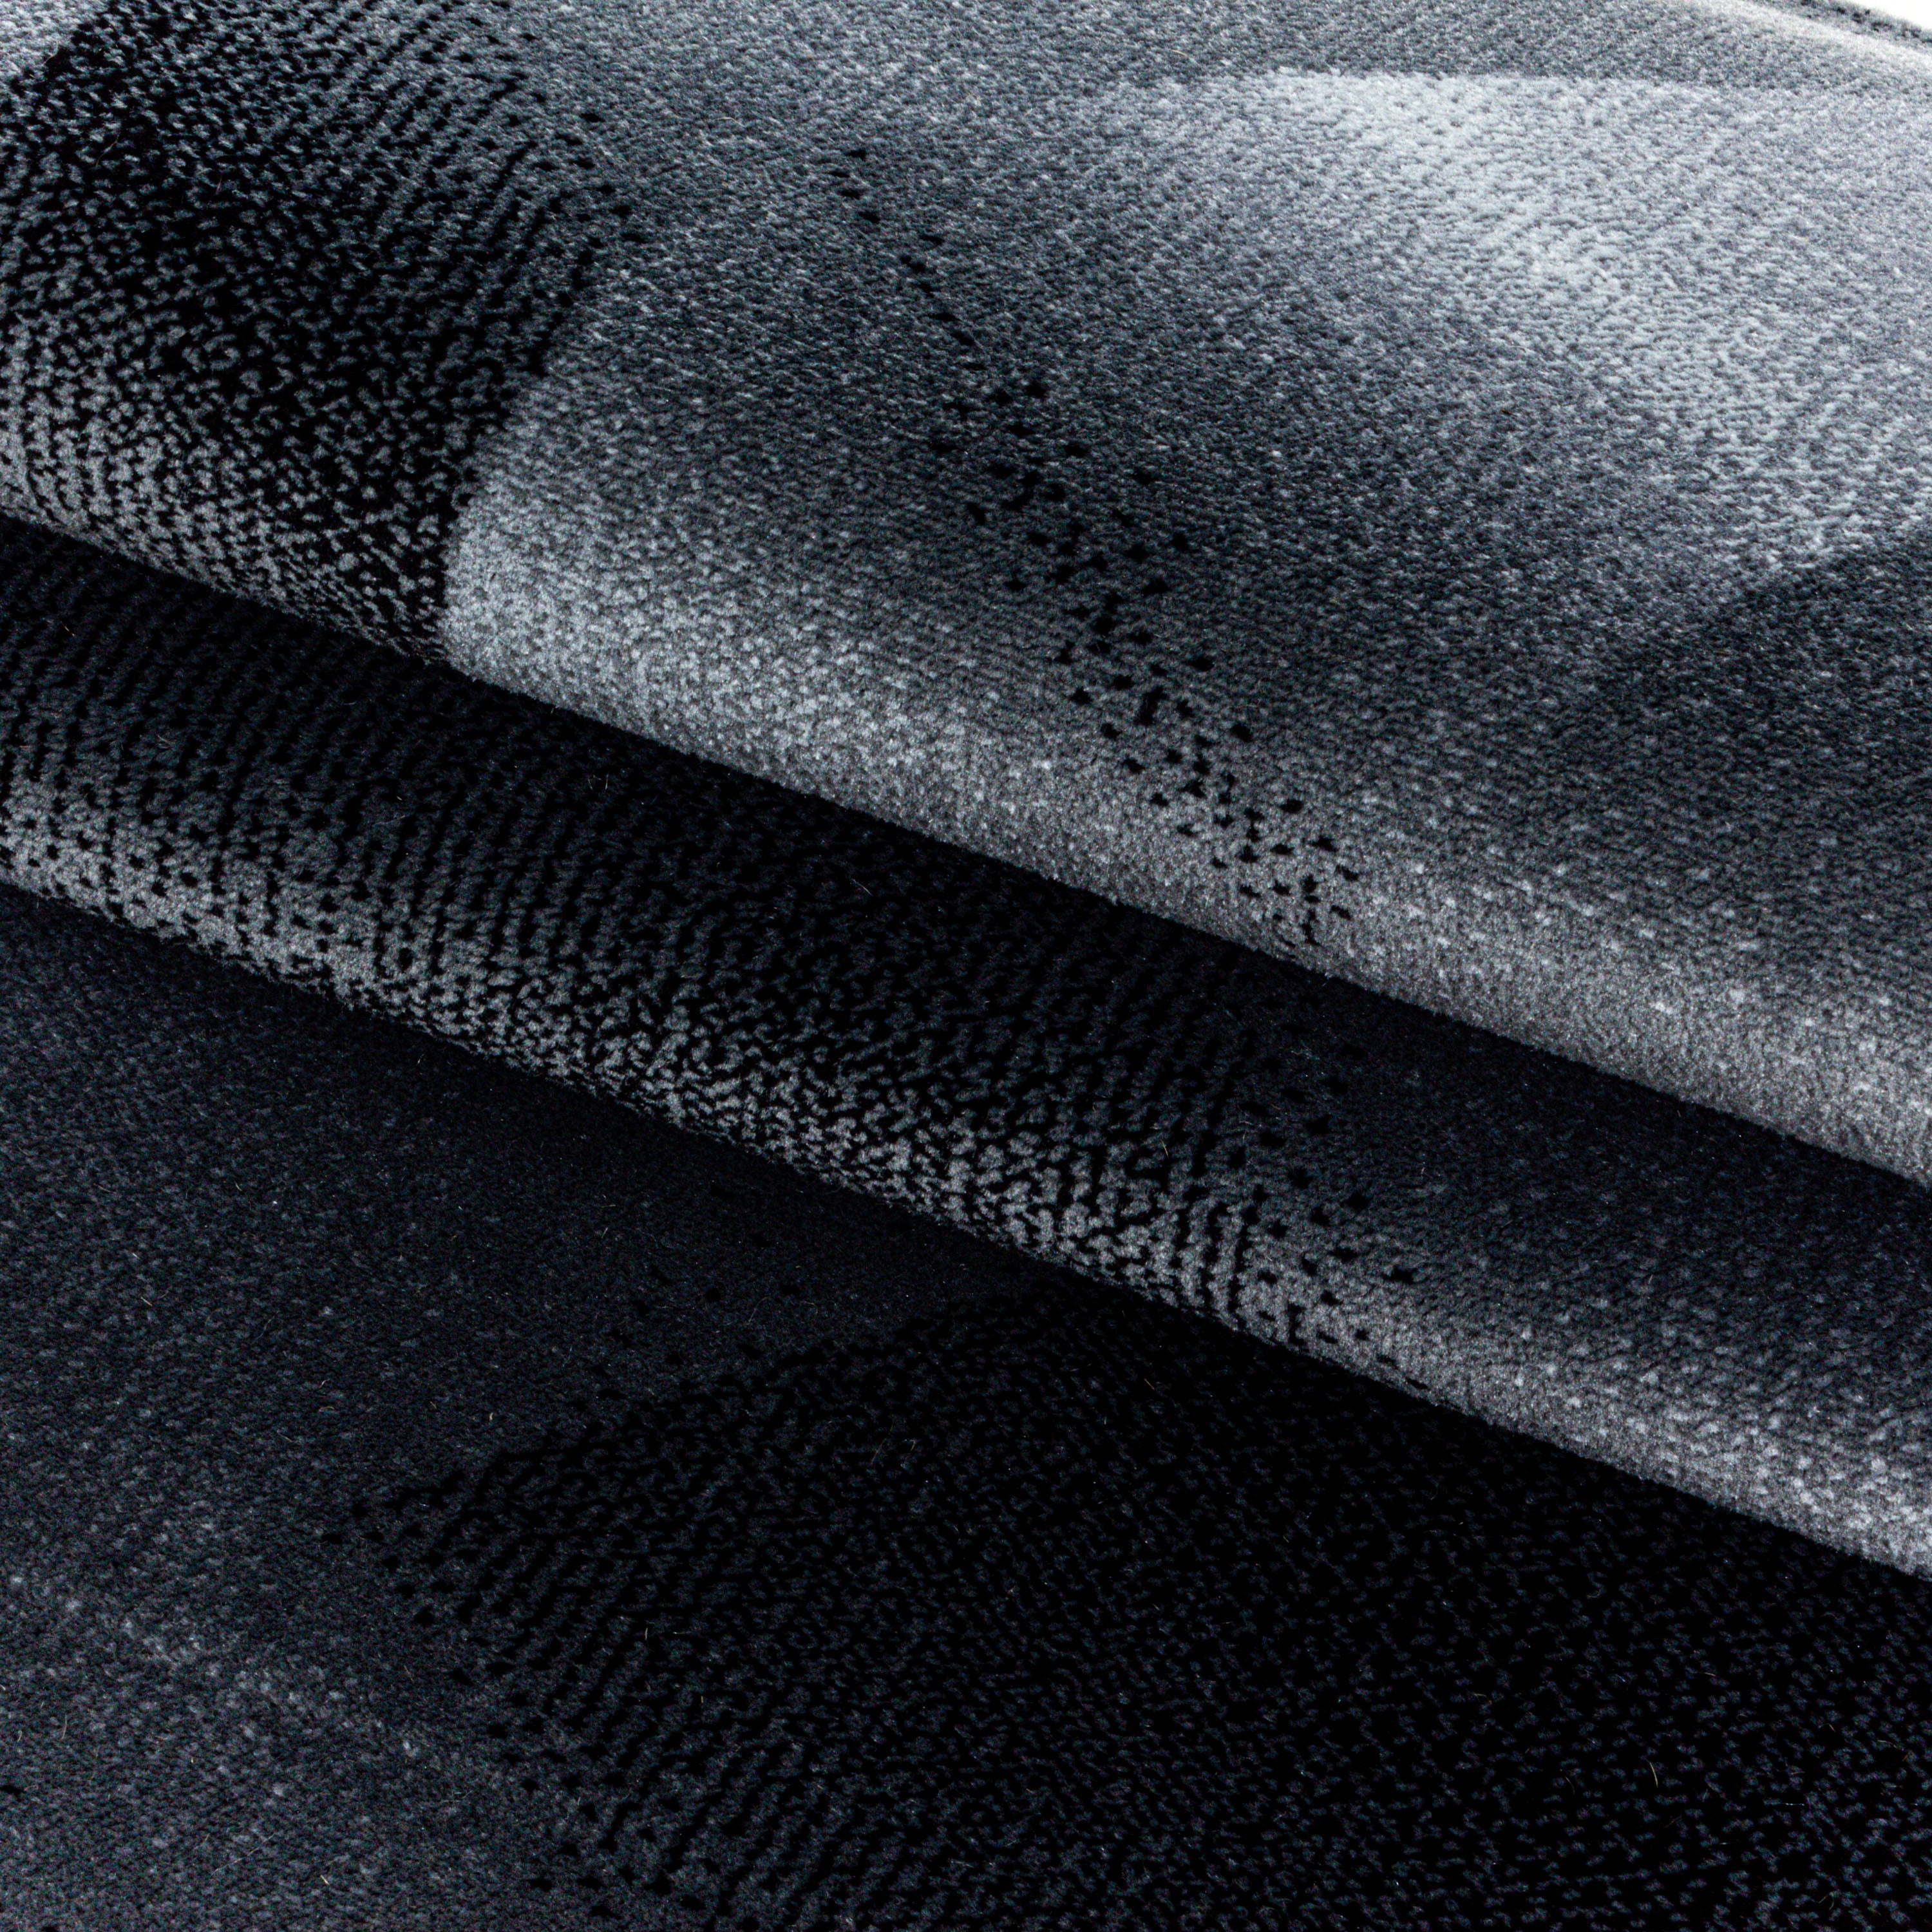 Kurzflor Teppich Set Schlafzimmer Läufer Streifen Wellen Design 3 Teile Schwarz